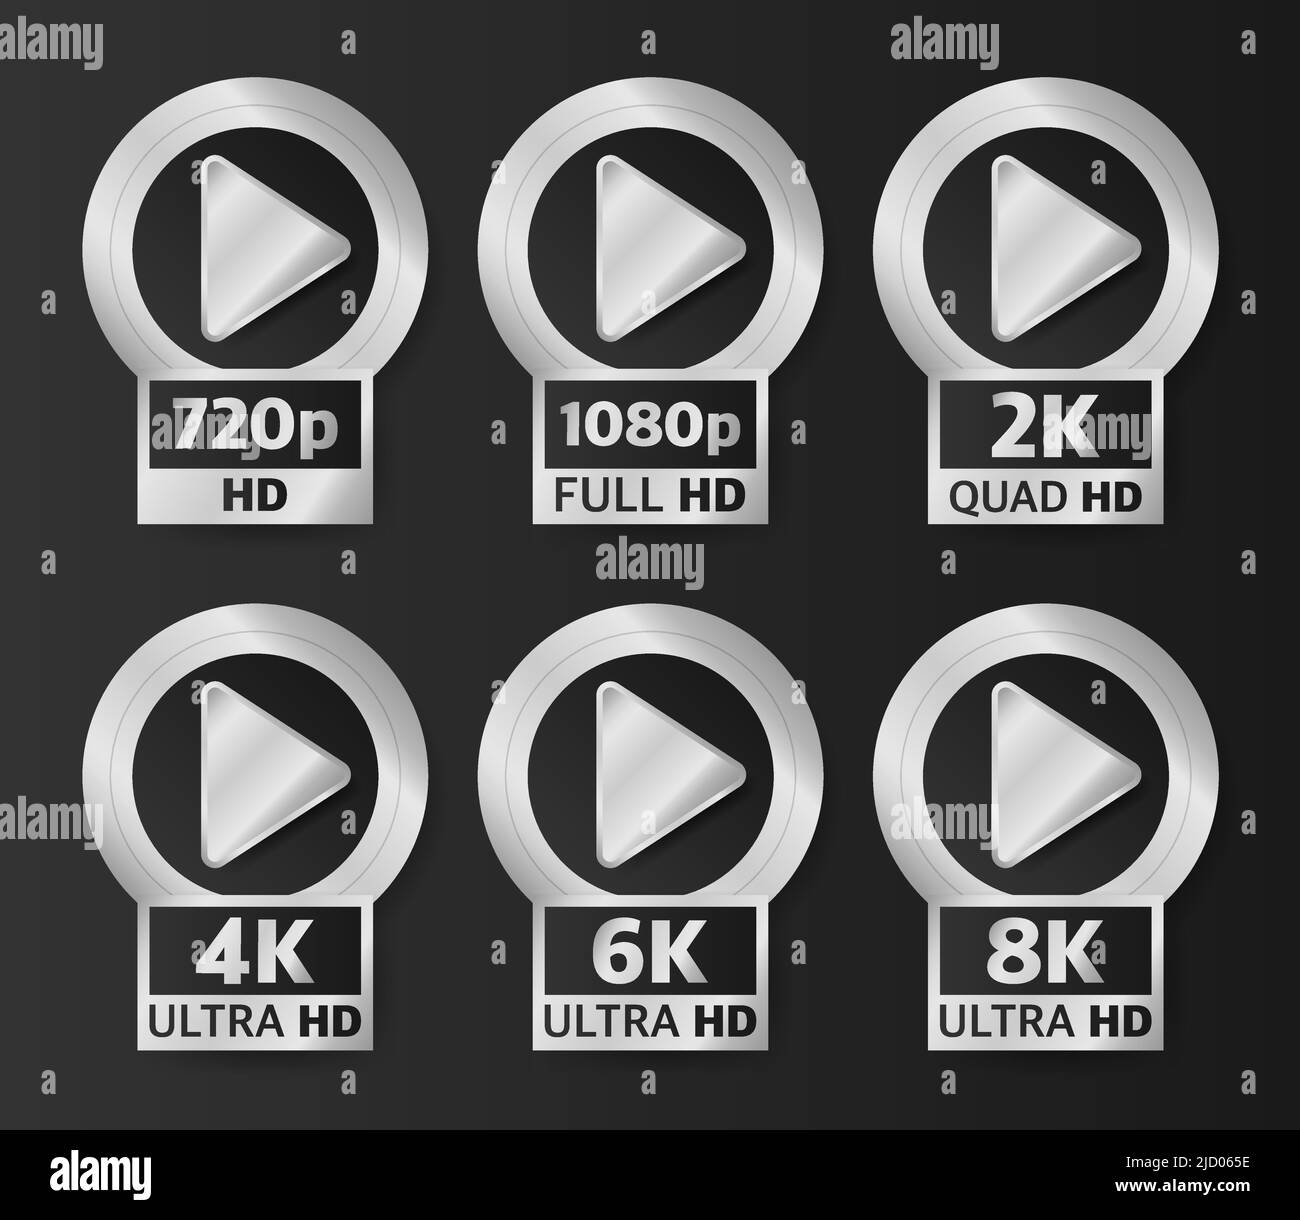 Video-Qualität Abzeichen in silberner Farbe auf schwarzem Hintergrund. HD, Full HD, 2K, 4K, 6K und 8K. Vektorgrafik. Stock Vektor